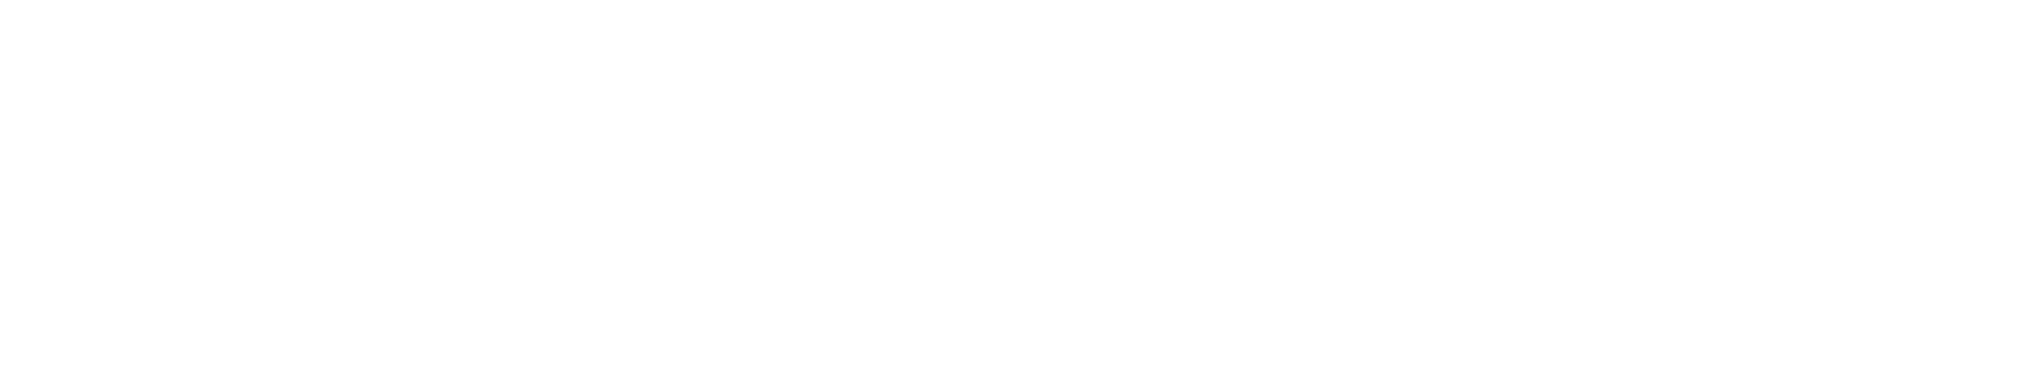 Gantner-logo